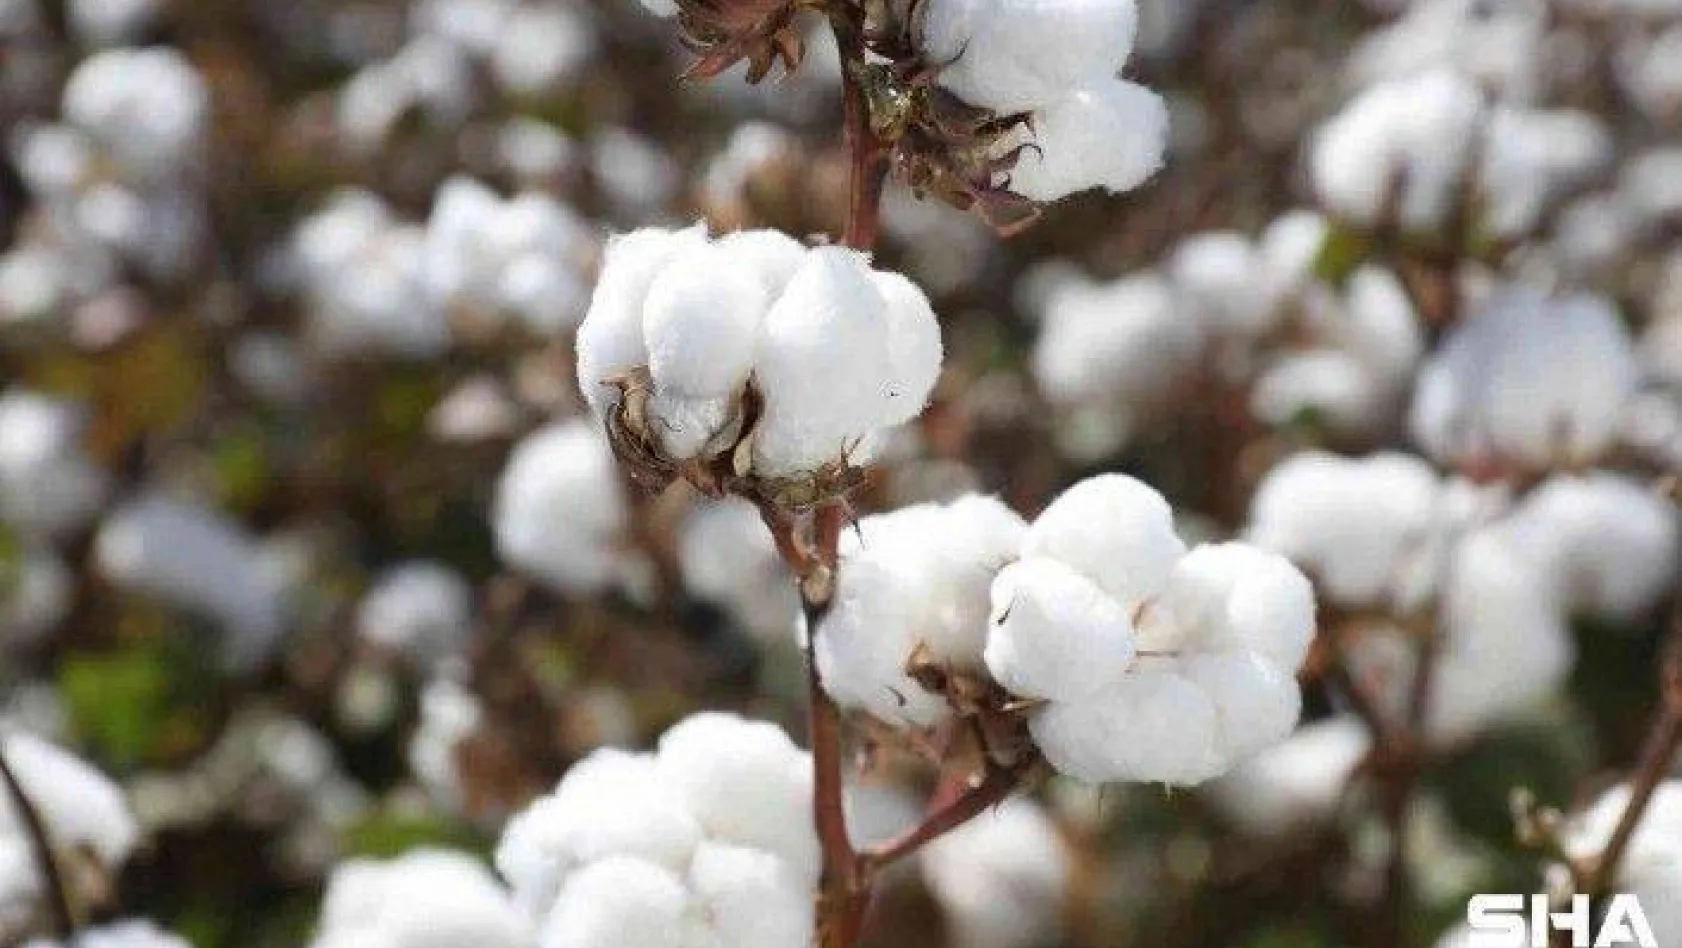 Türk pamuk tohumlarının AB ülkelerinde tescilli tamamlandı